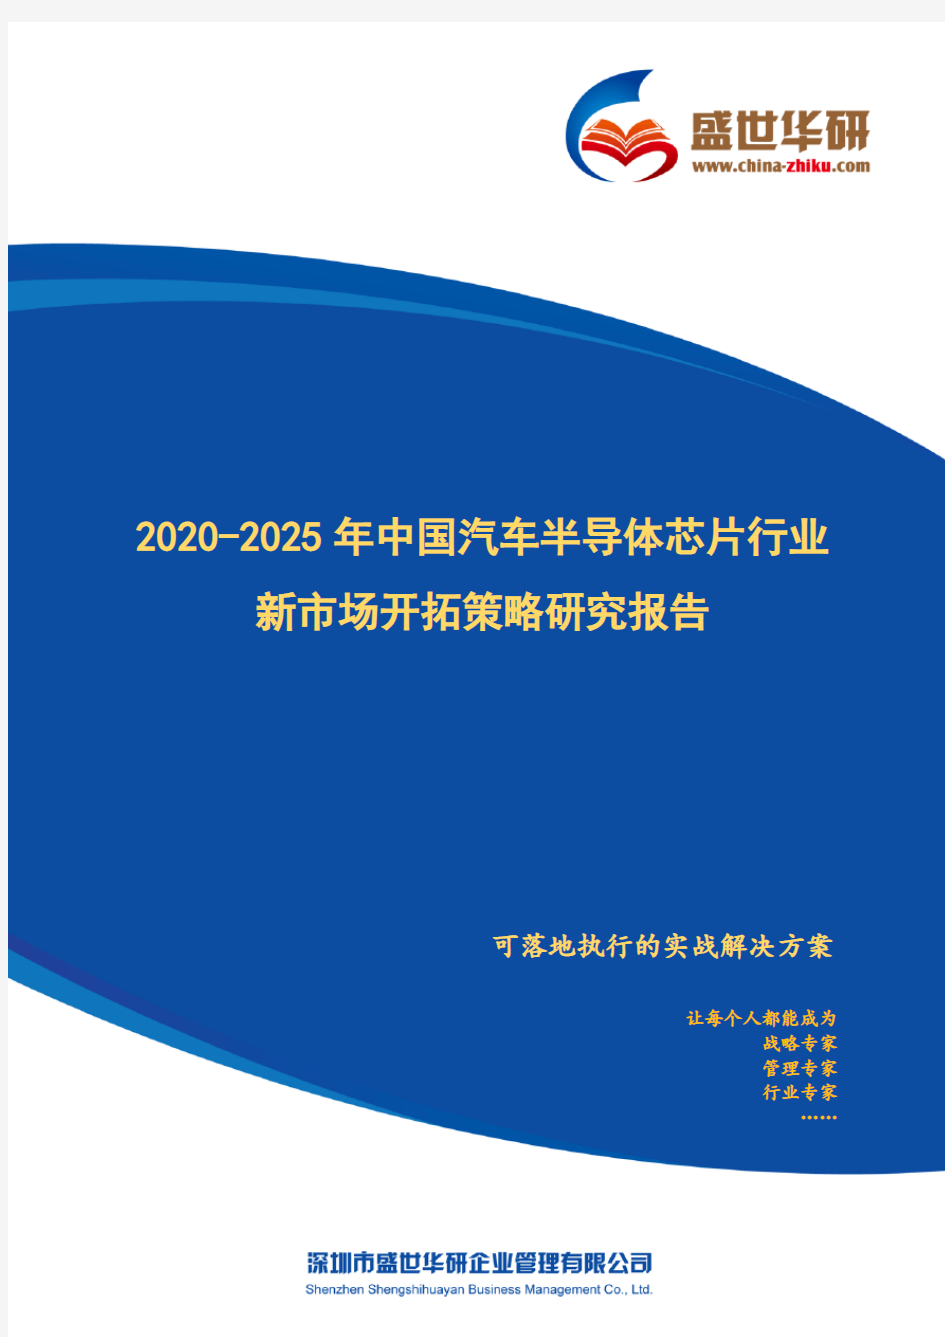 【完整版】2020-2025年中国汽车半导体芯片行业新市场开拓策略研究报告